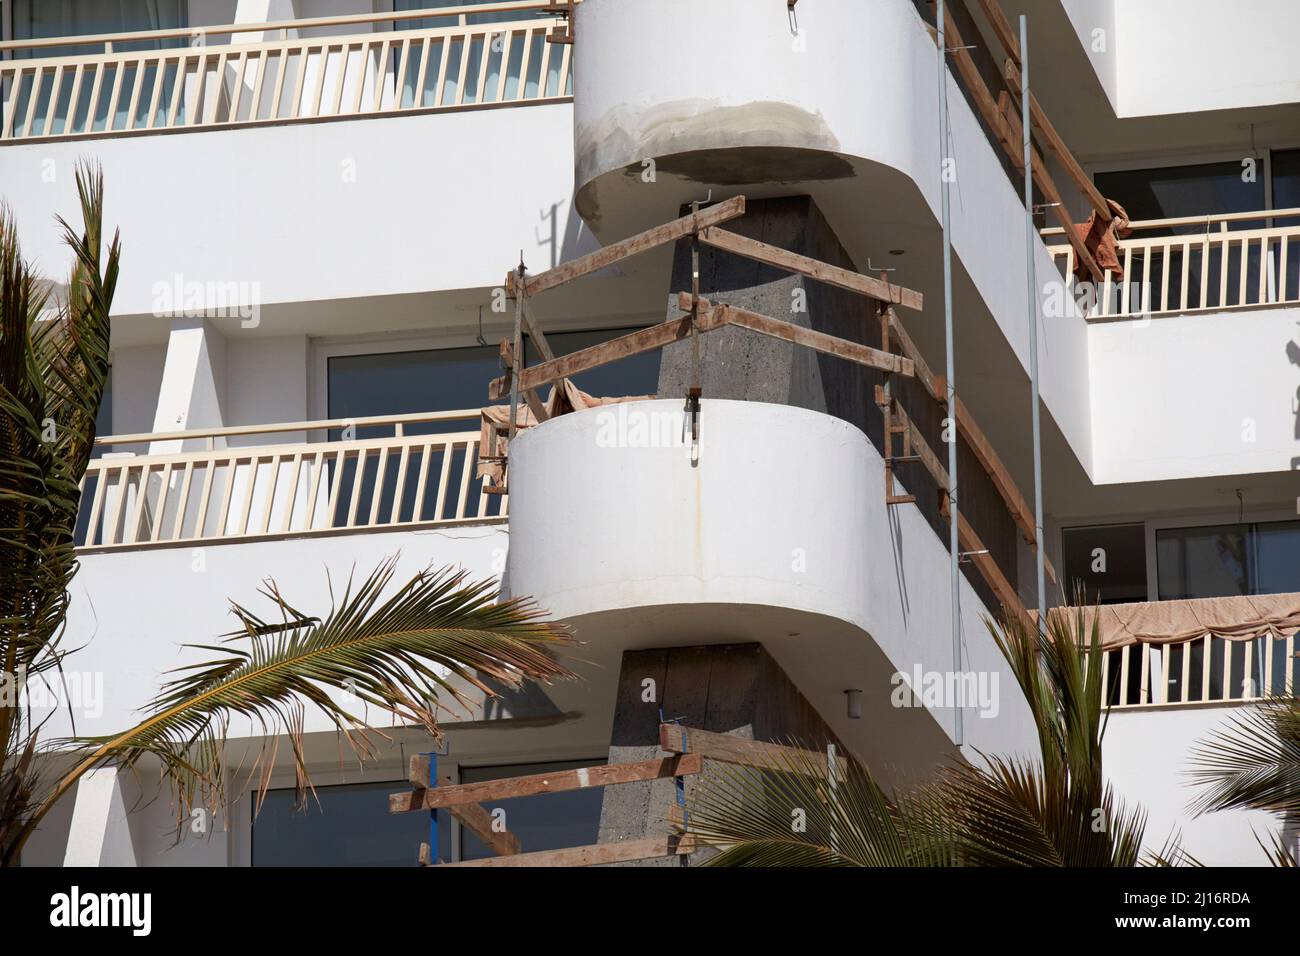 lavori di riparazione in corso per le sistemazioni in hotel balconi a puerto del carmen isole canarie di lanzarote spagna Foto Stock